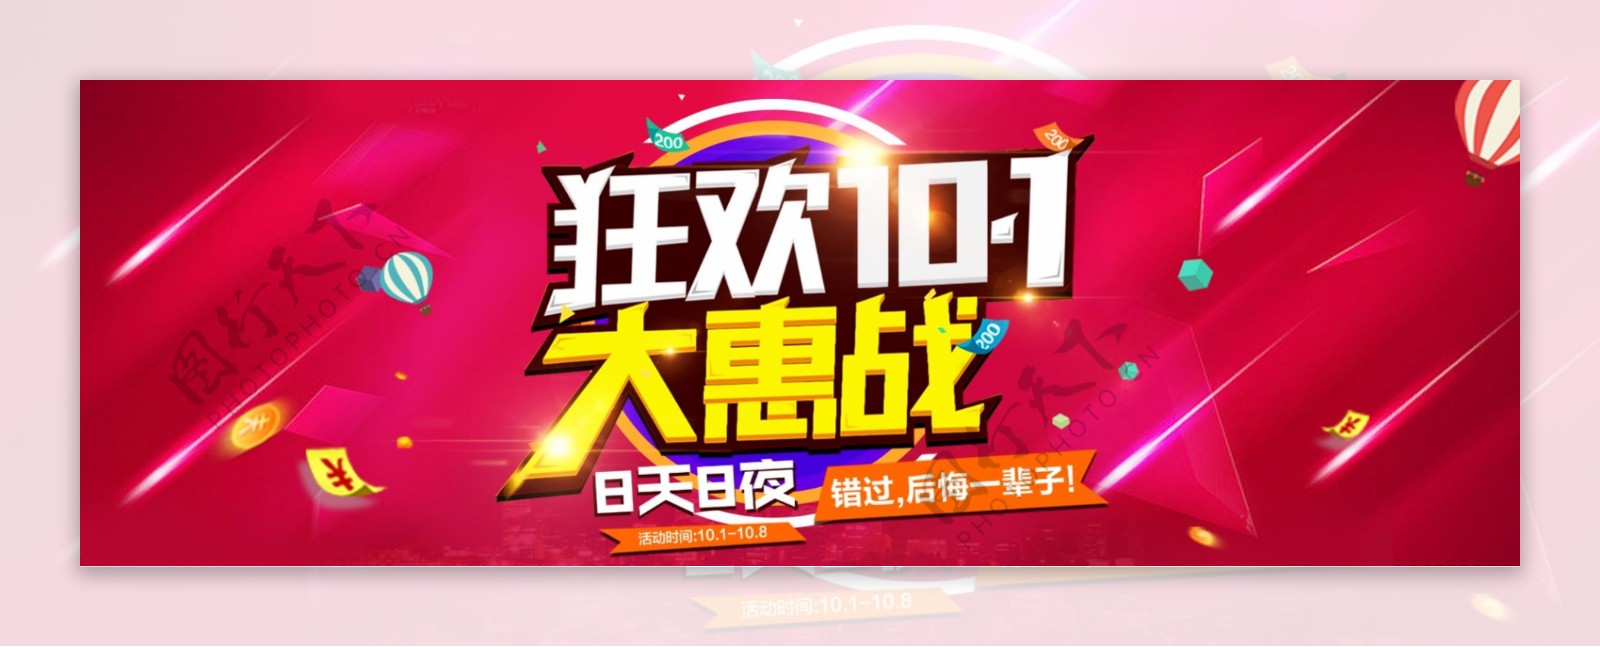 淘宝天猫电商国庆中秋10.1促销活动狂欢海报banner模板设计